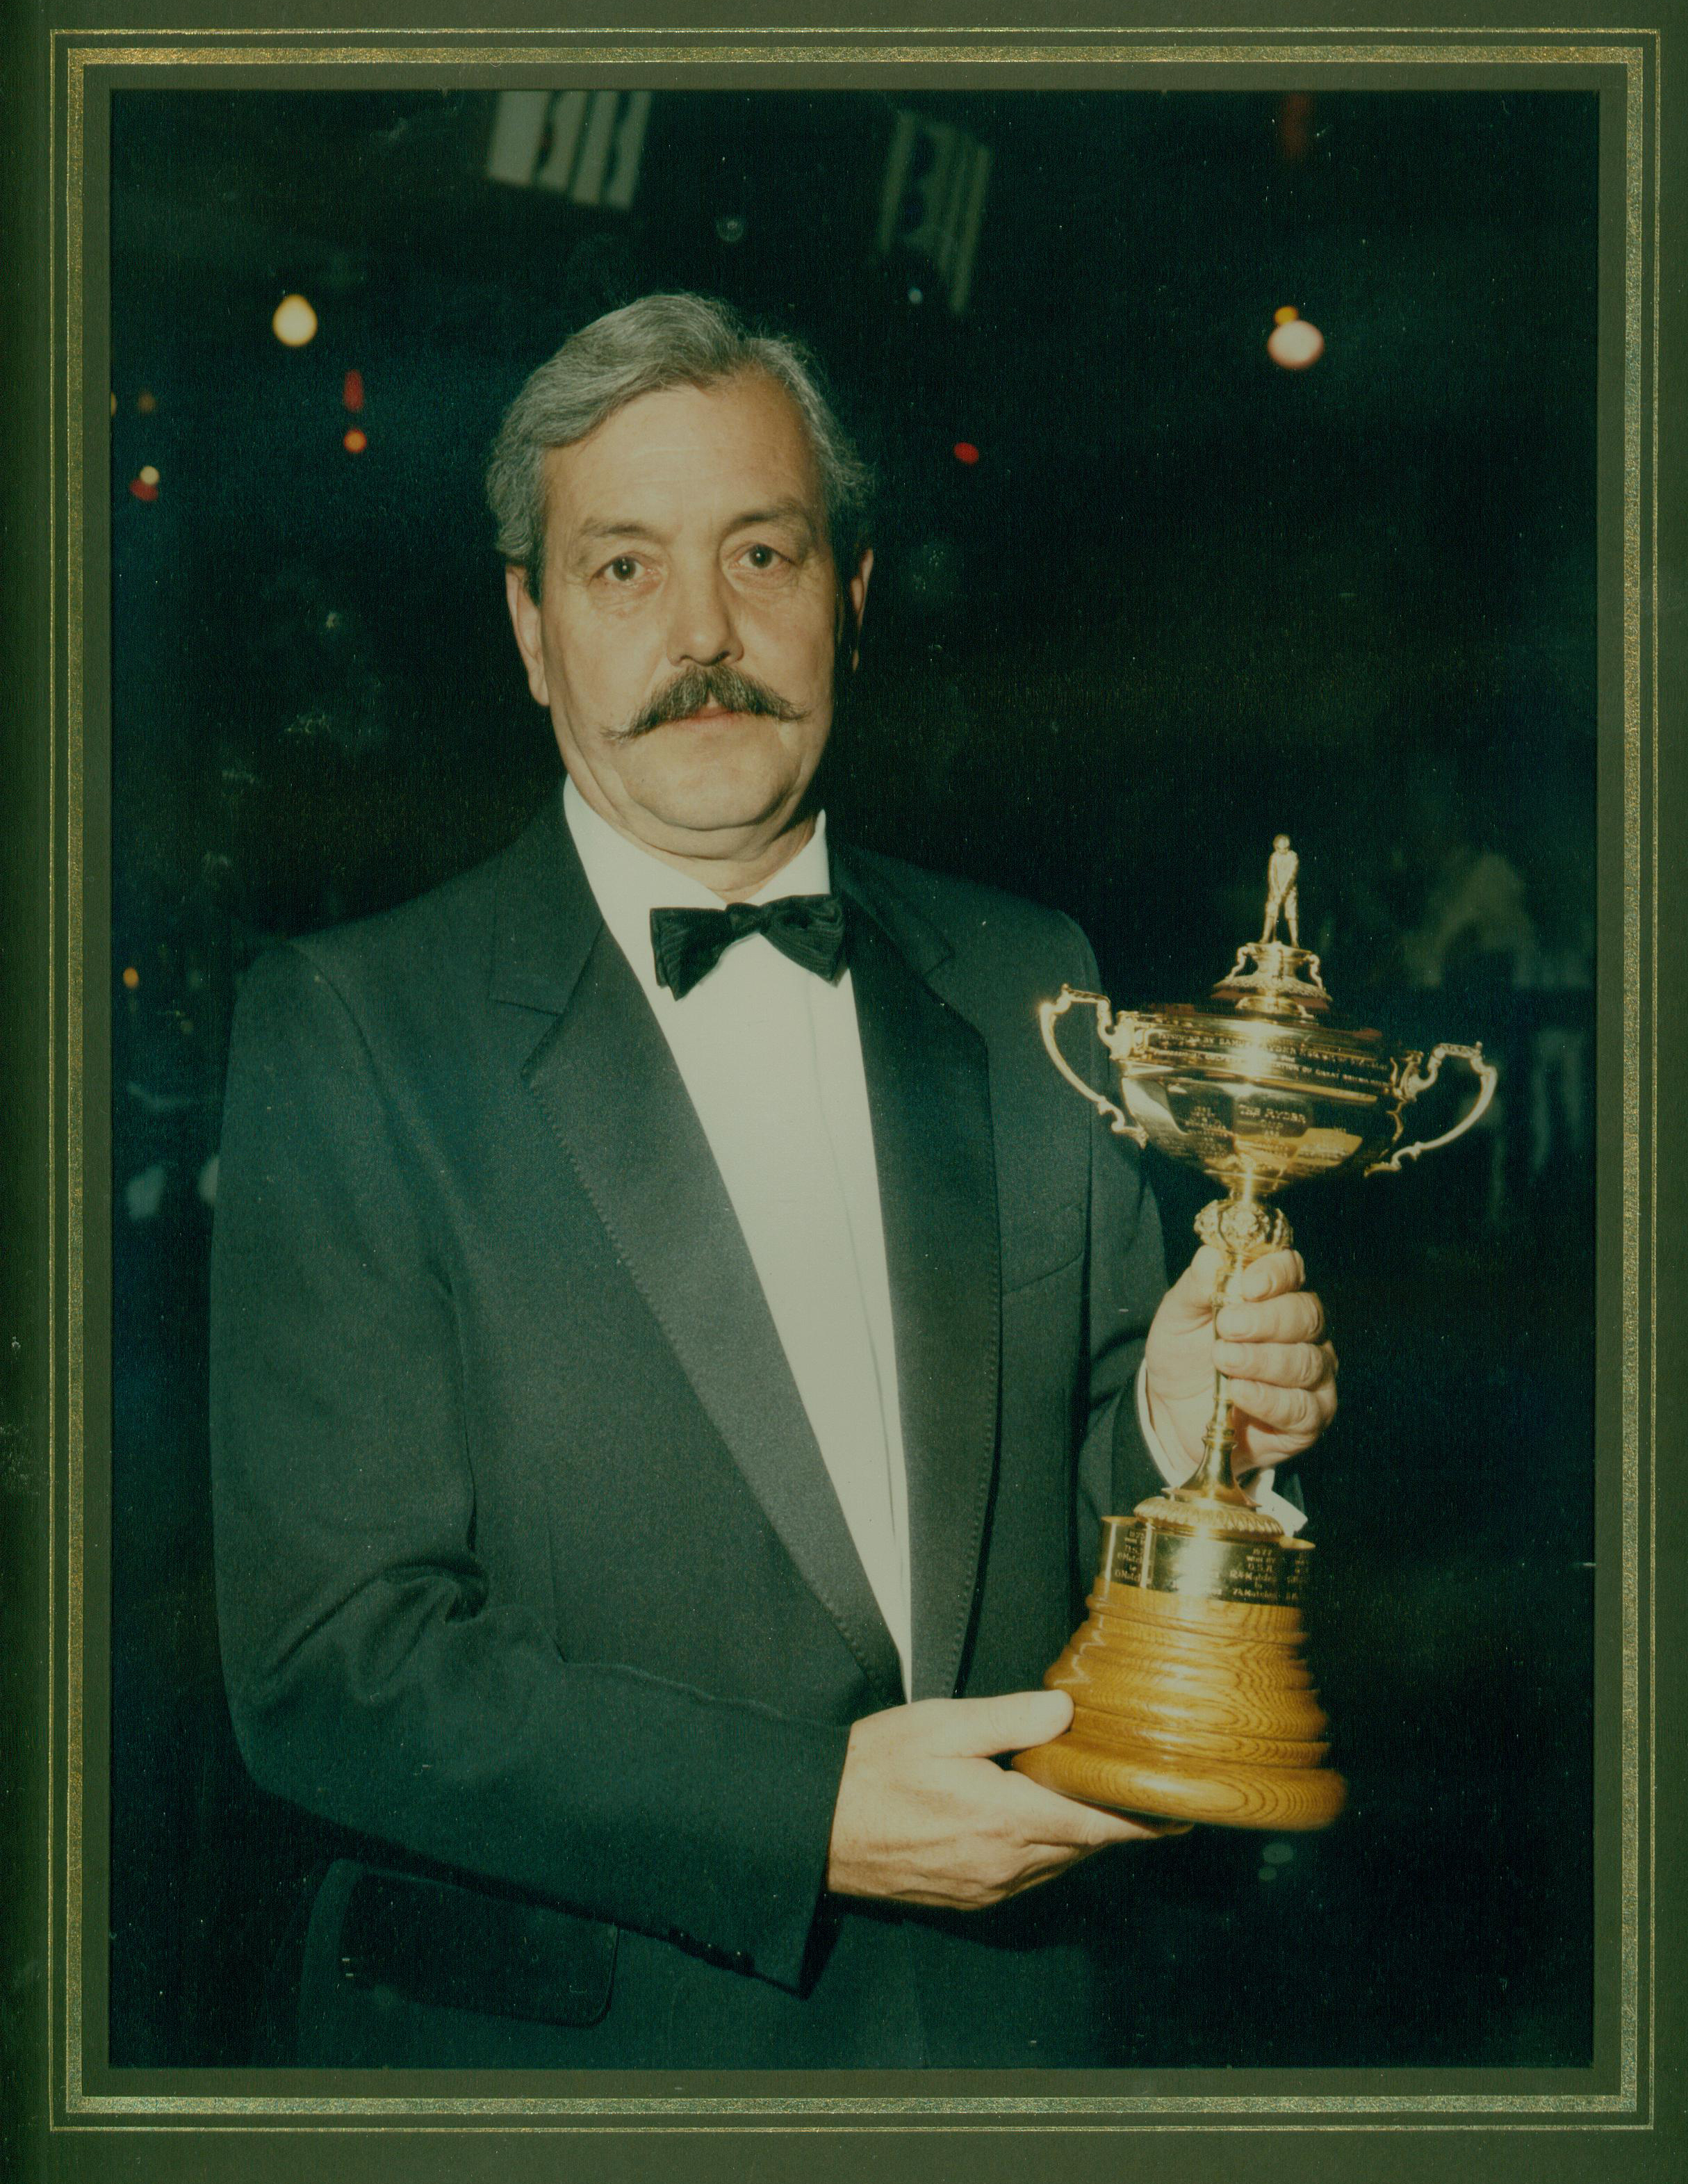 John Ryder Cup 1985